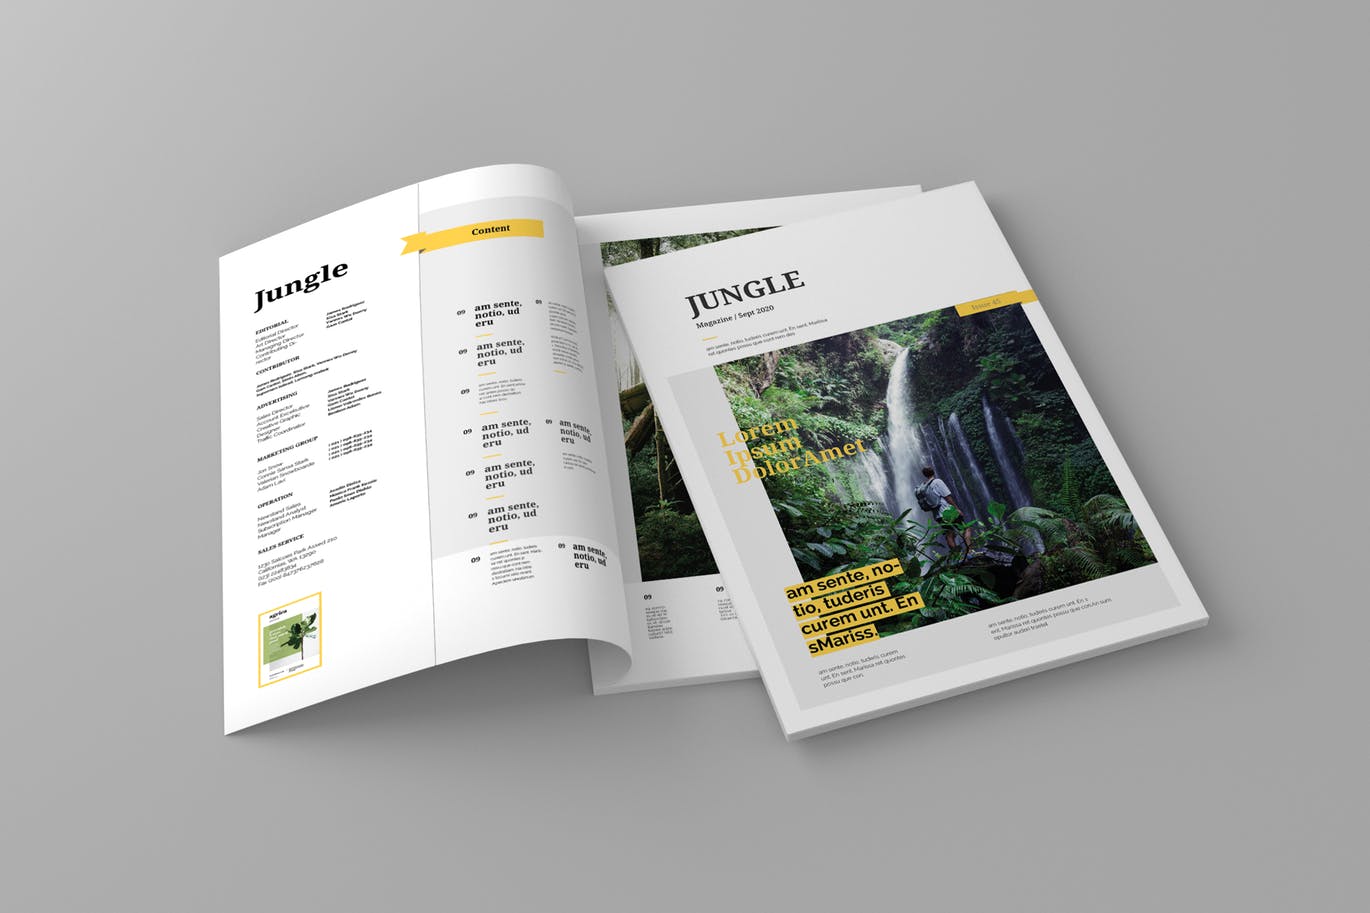 旅游行业非凡图库精选杂志版式设计模板 Jungle – Magazine Template插图